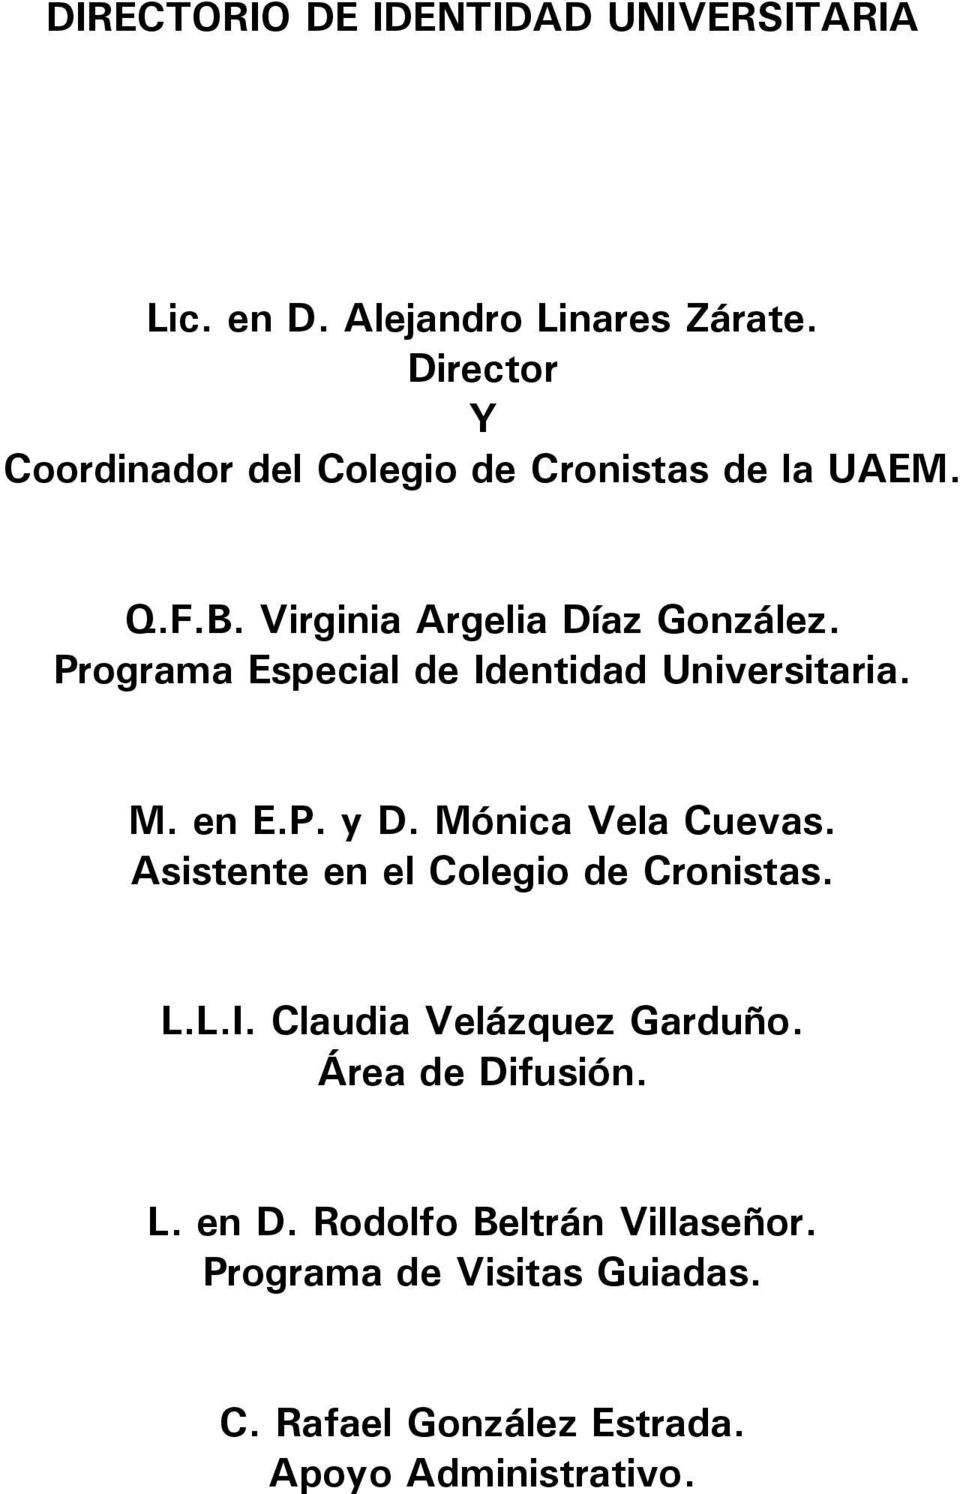 Programa Especial de Identidad Universitaria. M. en E.P. y D. Mónica Vela Cuevas.